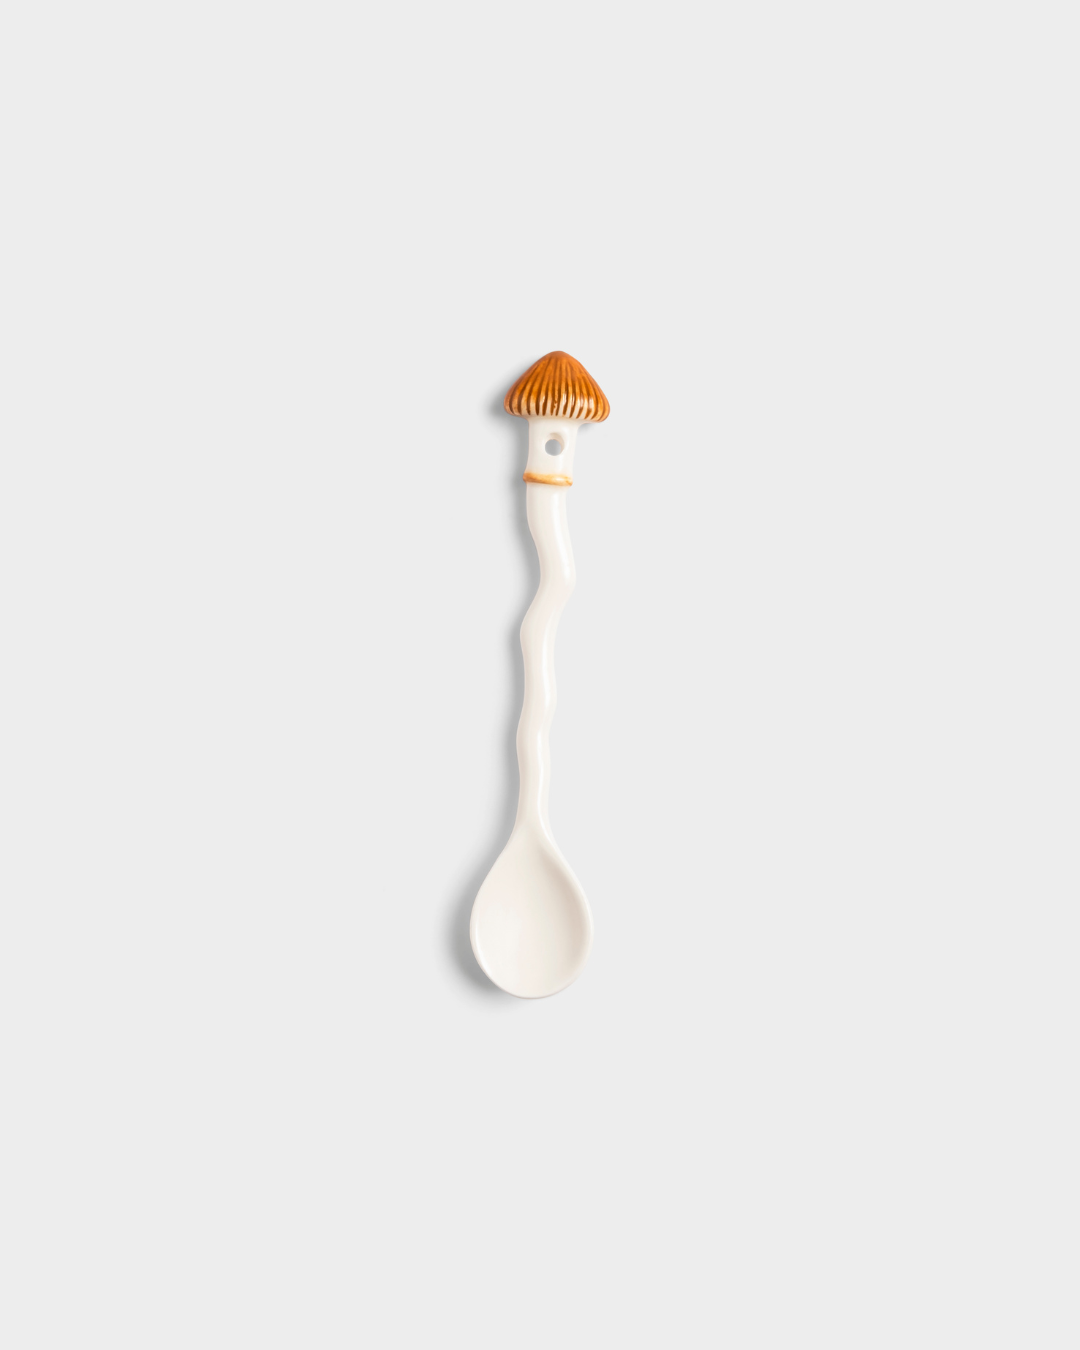 6 Set Mushroom Spoons